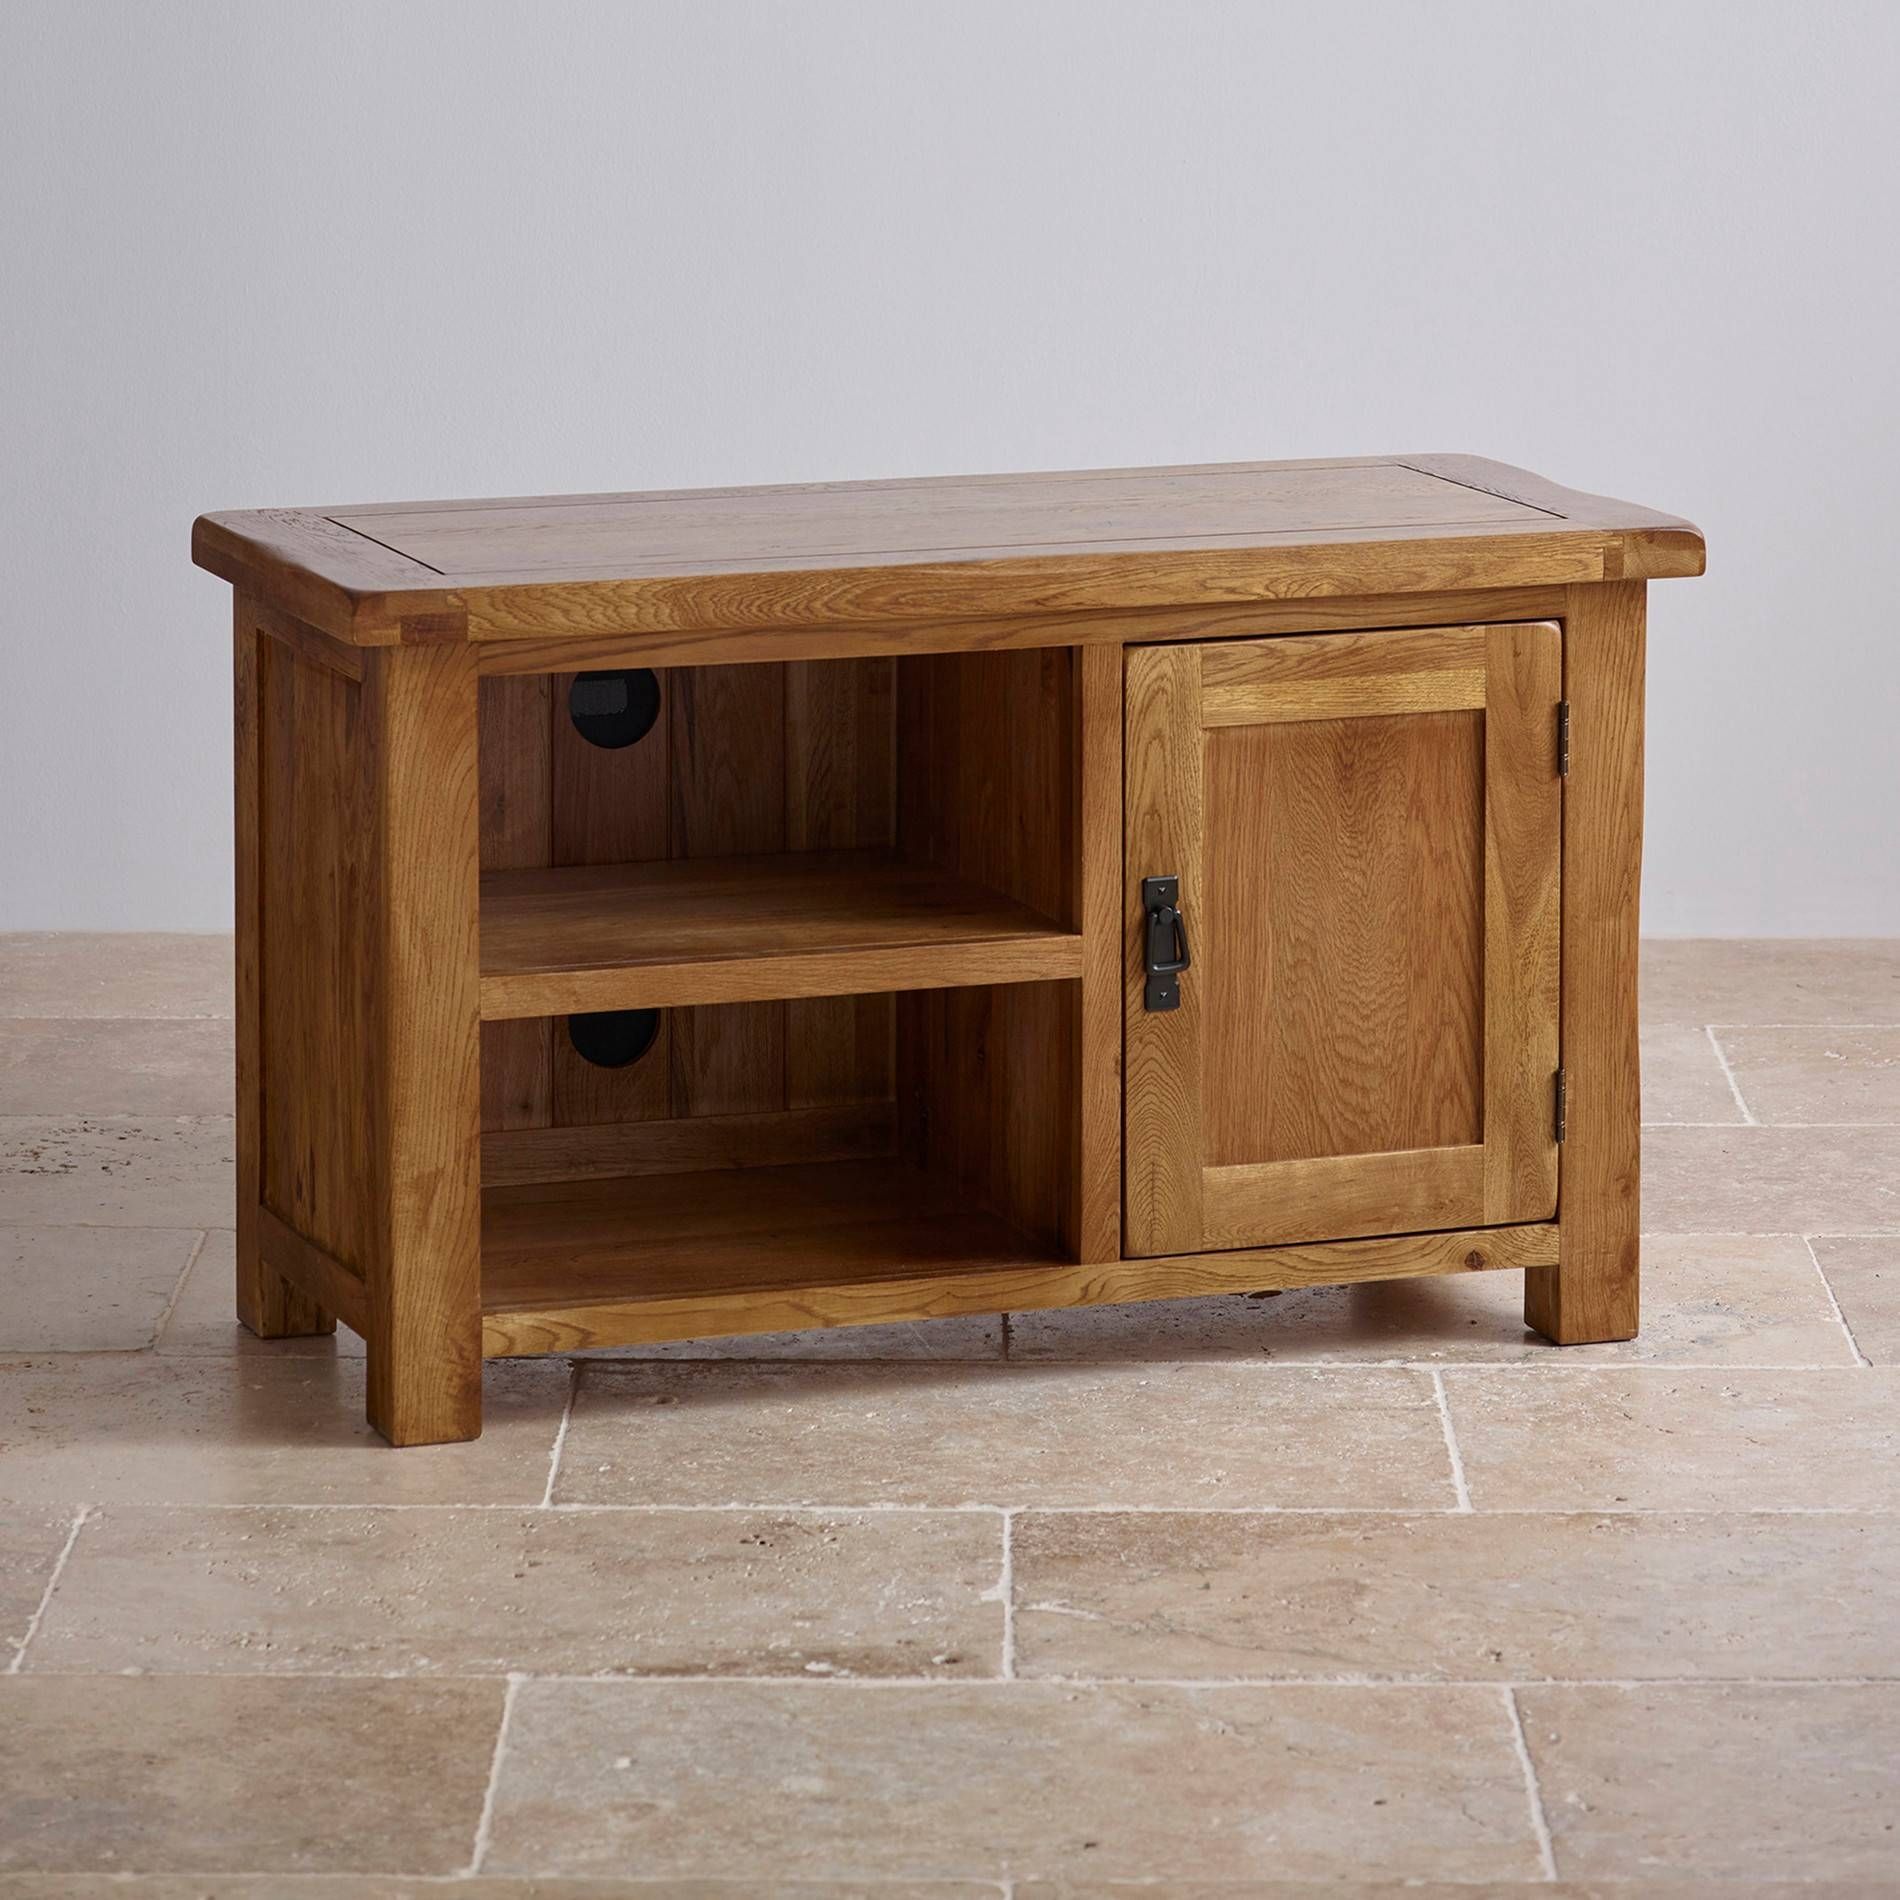 Original Rustic Tv Cabinet In Solid Oak | Oak Furniture Land Within Rustic Oak Tv Stands (View 1 of 15)